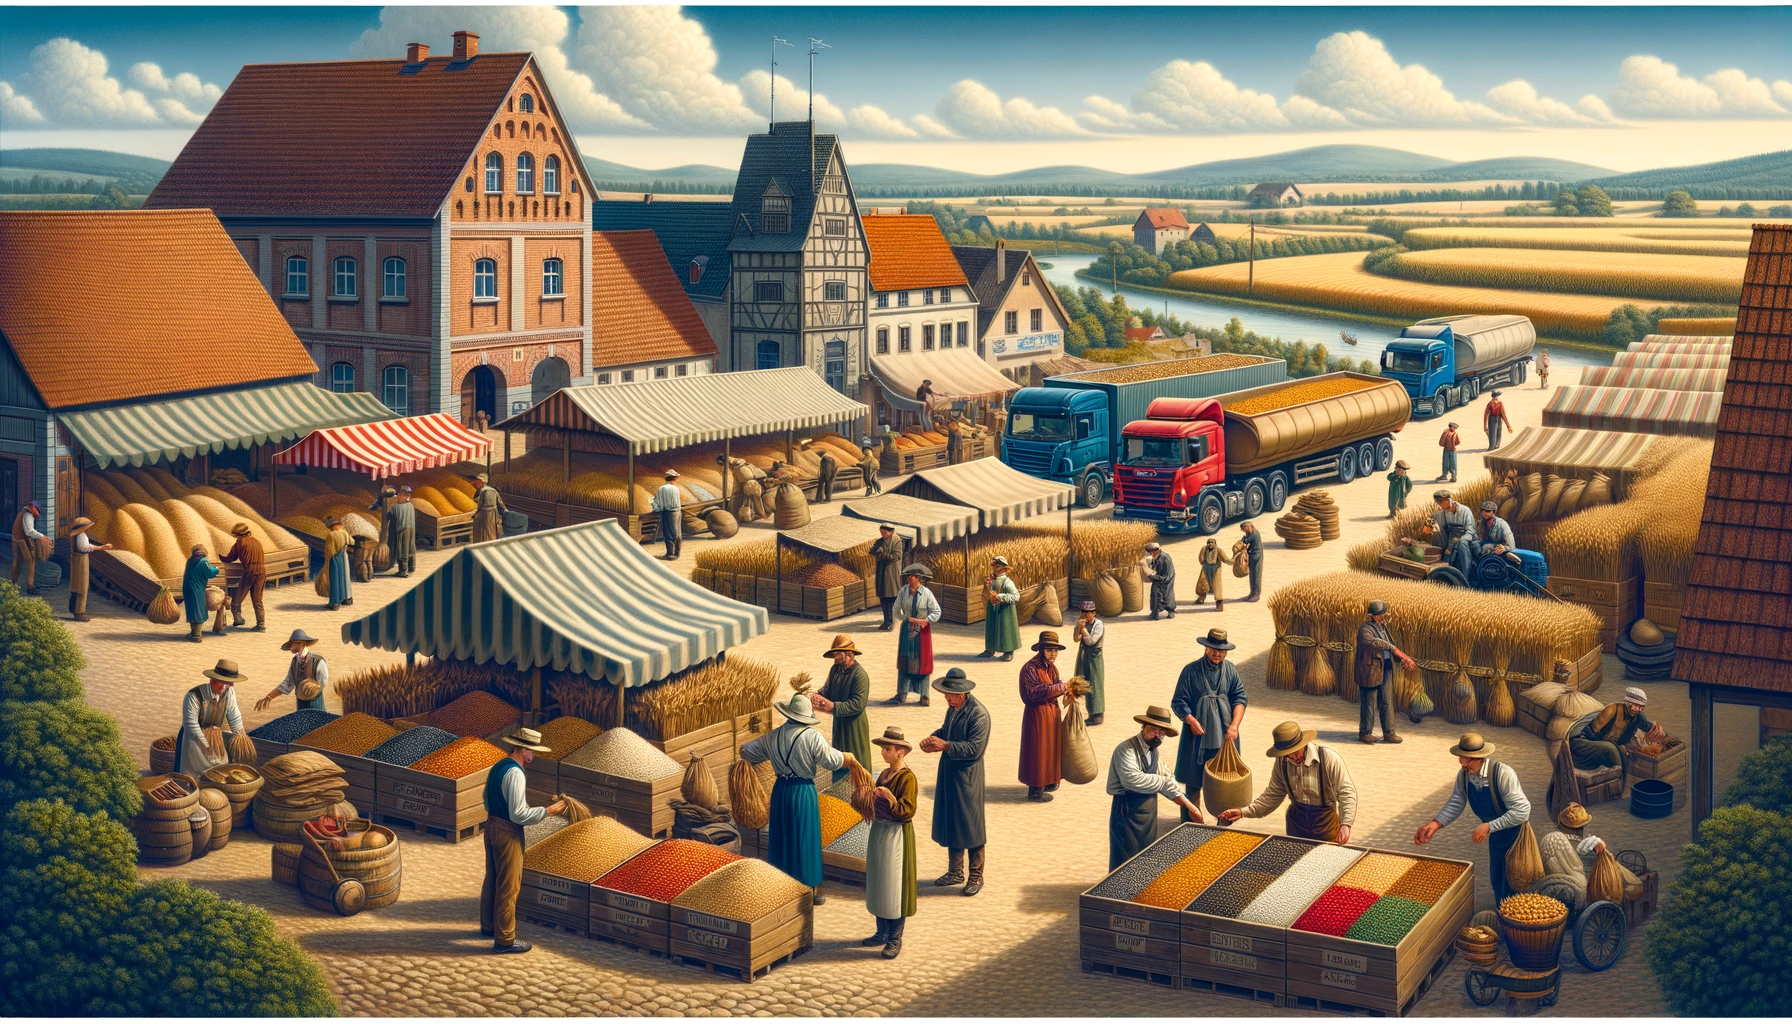 Europäischer Agrarmarkt mit Händlern, die Getreide verkaufen, umgeben von traditionellen Gebäuden und modernen Lastwagen im Hintergrund, was die Verbindung von alter und neuer Agrarwirtschaft darstellt." Die Beschreibungen sollen sicherstellen, dass die Keywords wie "EU-Agrarmarkt", "Getreidehandel", "traditionelle Handelsmethoden", "moderne Landwirtschaft" und "Vielfalt im Agrarsektor" inhaltlich mit dem Text, der Metadescription und den Social Media Posts abgestimmt sind.